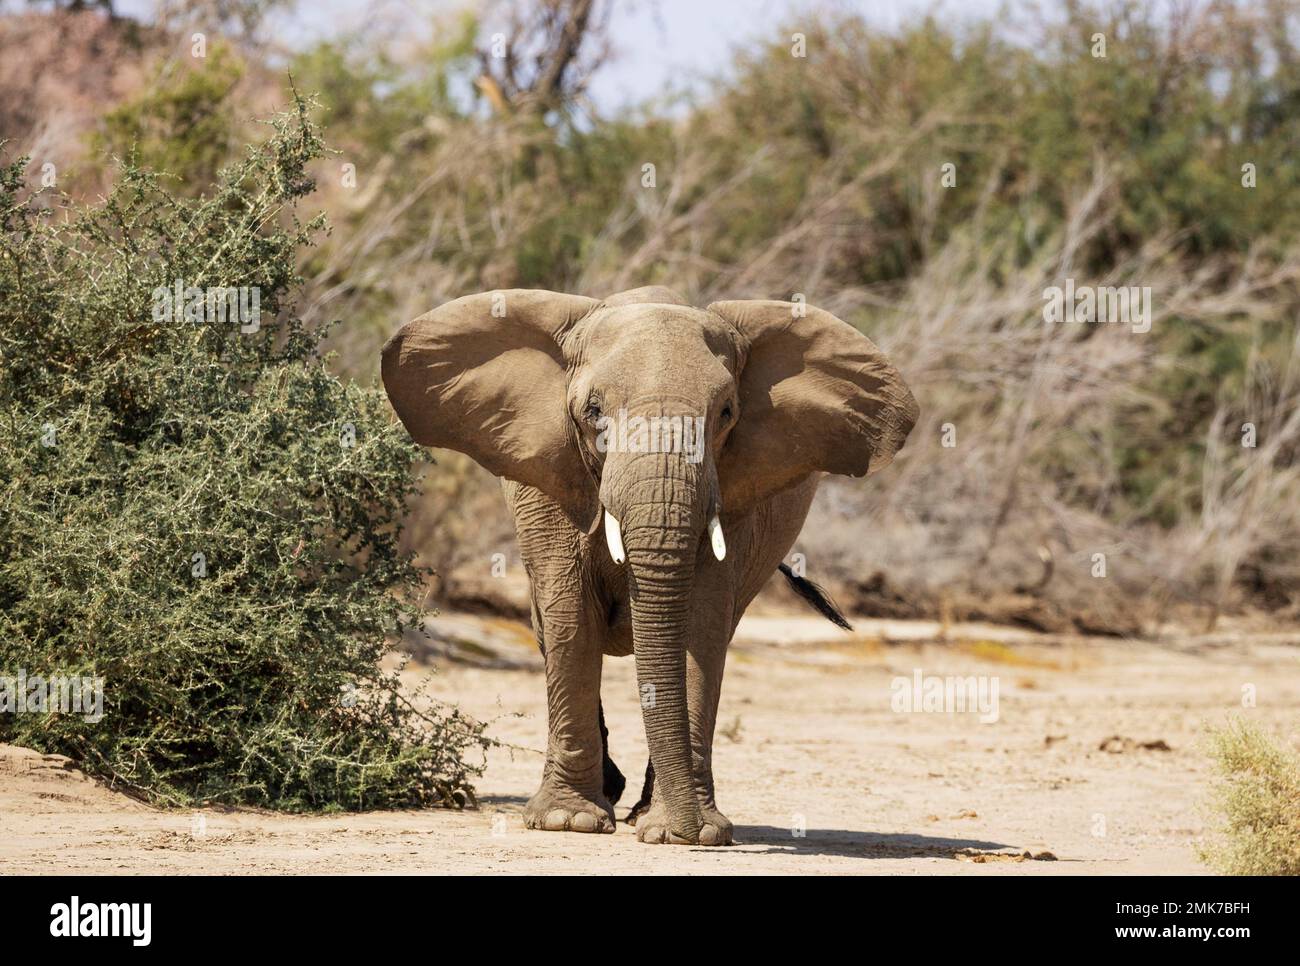 Elefante africano (Loxodonta africana), cosiddetto elefante del deserto, subadulto che cerca di impressionare il fotografo, nel letto secco del fiume Ugab Foto Stock